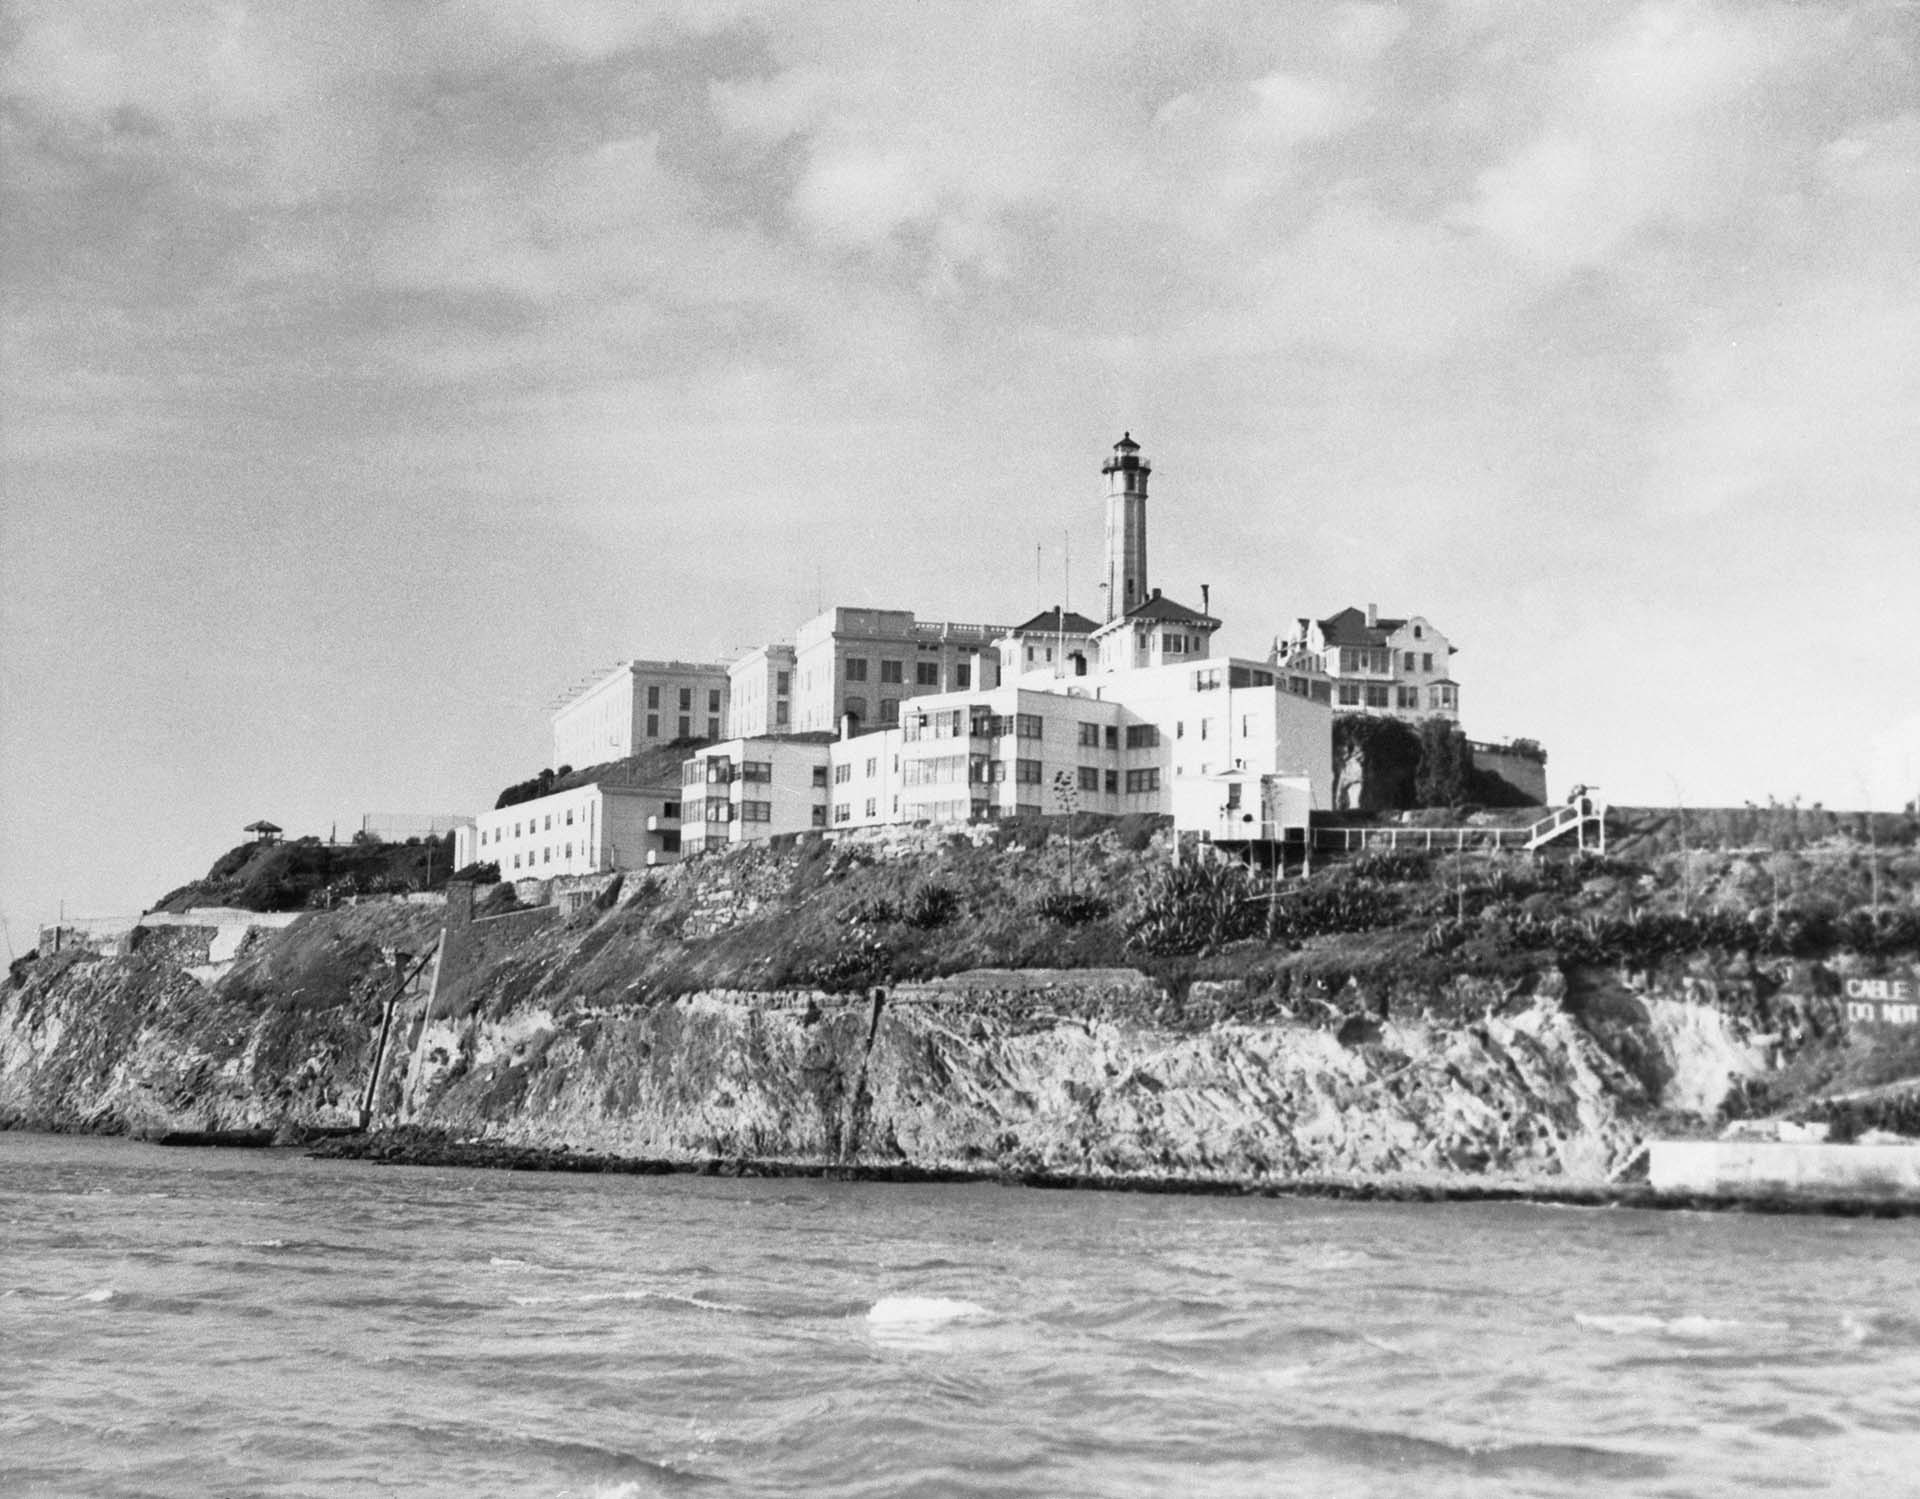 Hace ochenta años, el 13 de abril de 1943, cuatro presos desesperados intentaron una huida igual de desesperada de Alcatraz, un penal infranqueable, recio y seguro